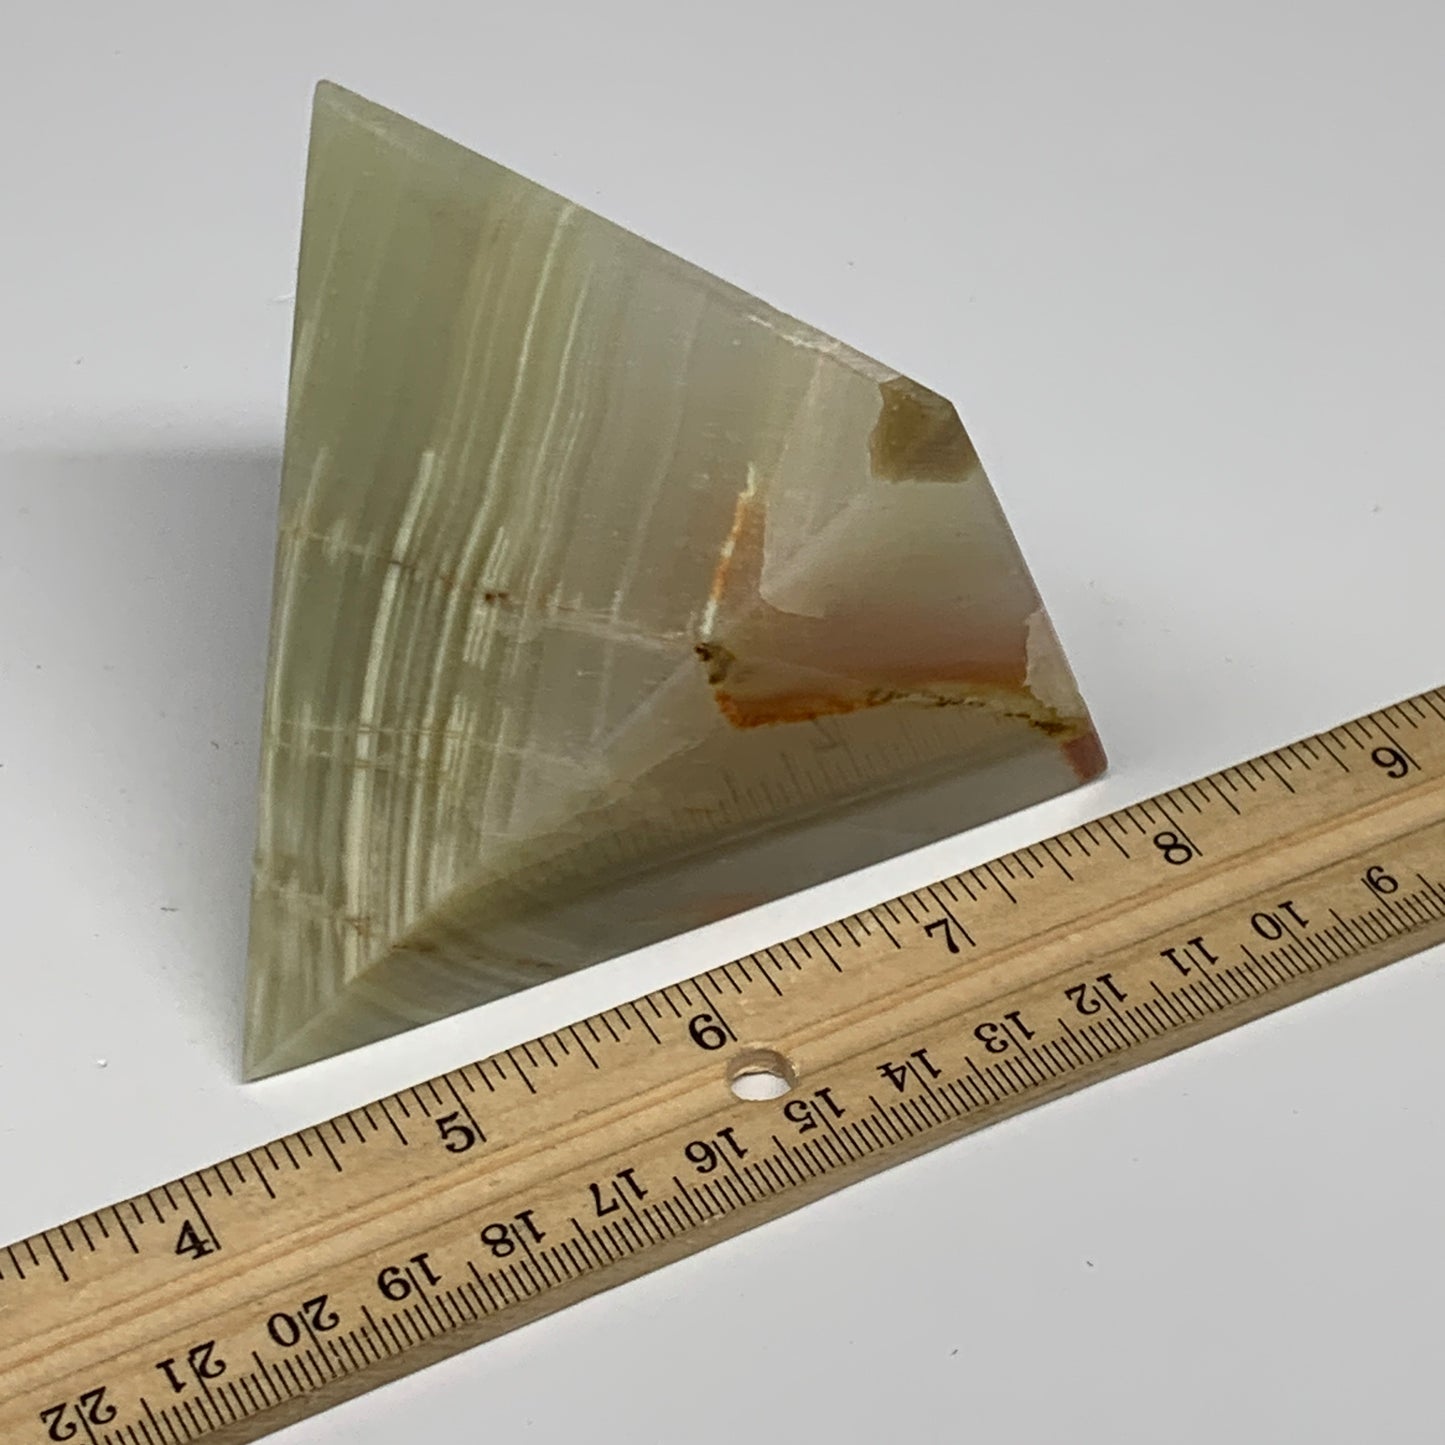 0.91 lbs, 3"x2.9"x2.9", Green Onyx Pyramid Gemstone Crystal, B32458